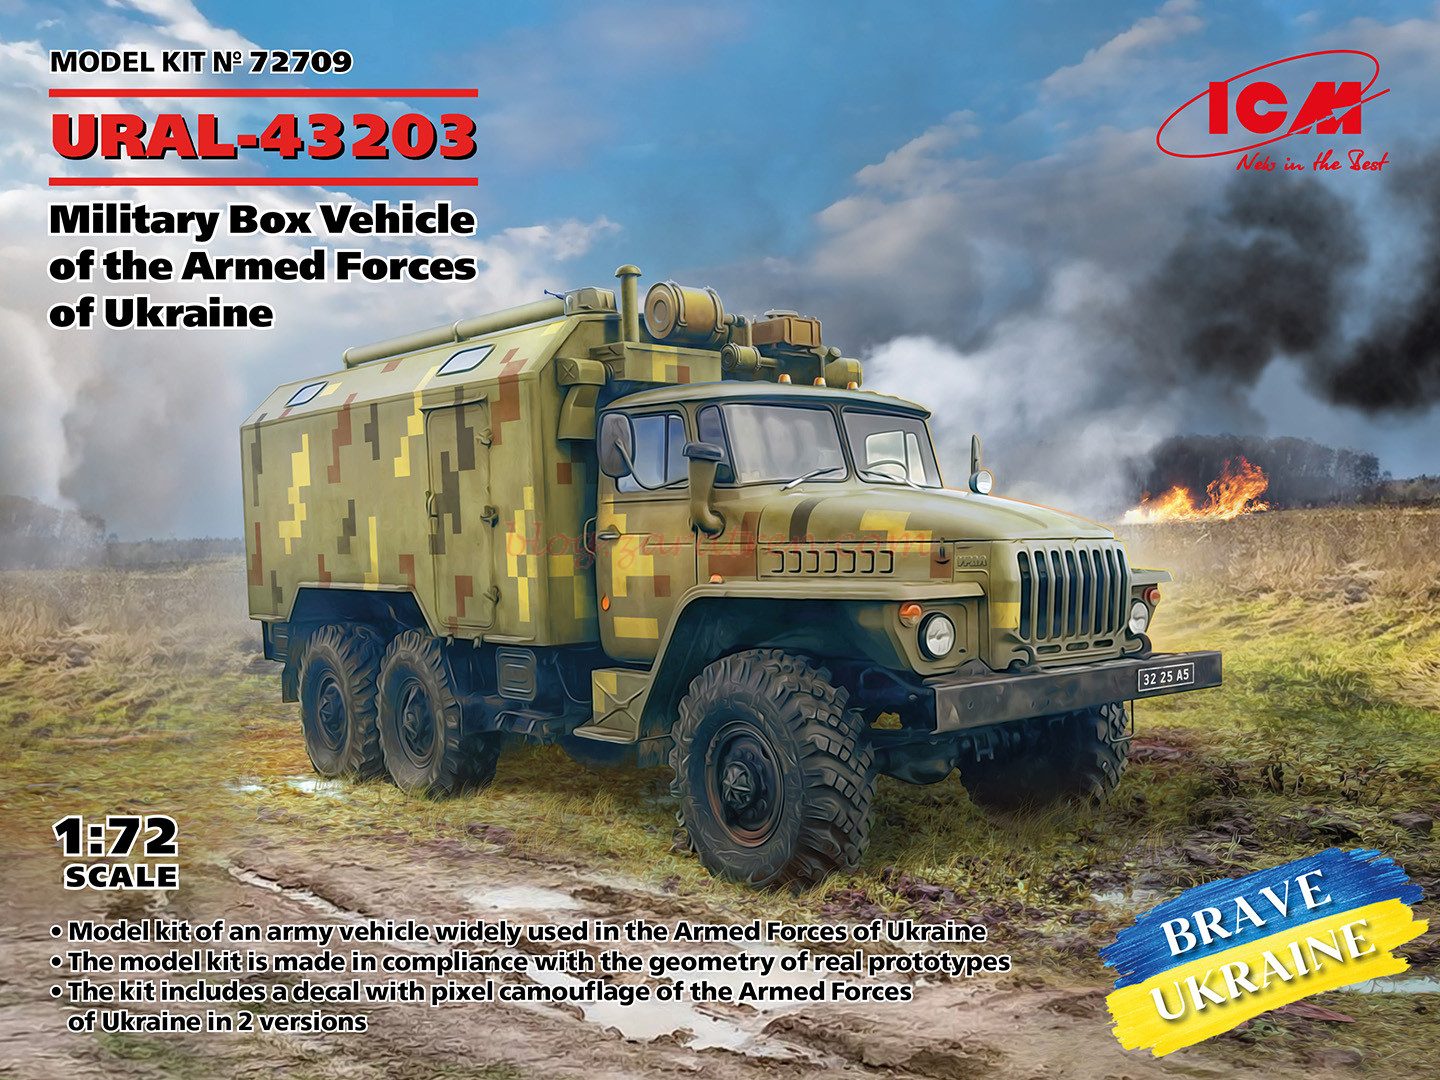 ICM – Vehículo URAL-43203 Militar de las Fuerzas Armadas de Ucrania , Escala 1:72, Ref: 72709